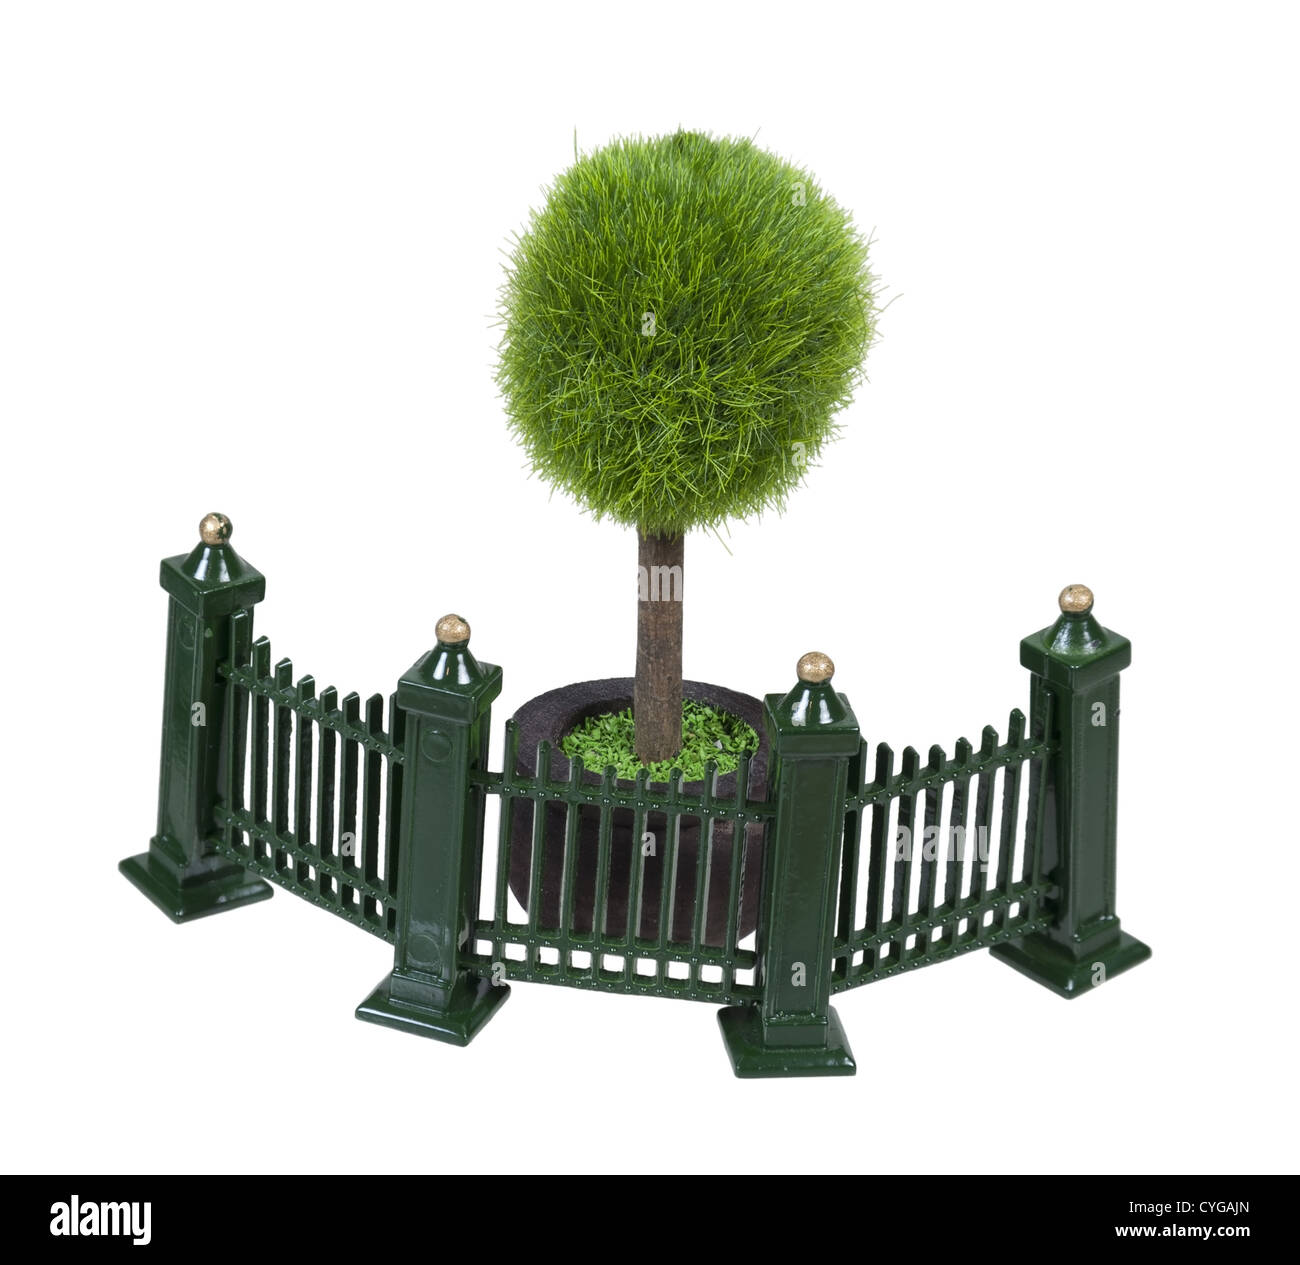 Clôture métallique avec volutes peint en vert en face d'un arbre en pot Banque D'Images